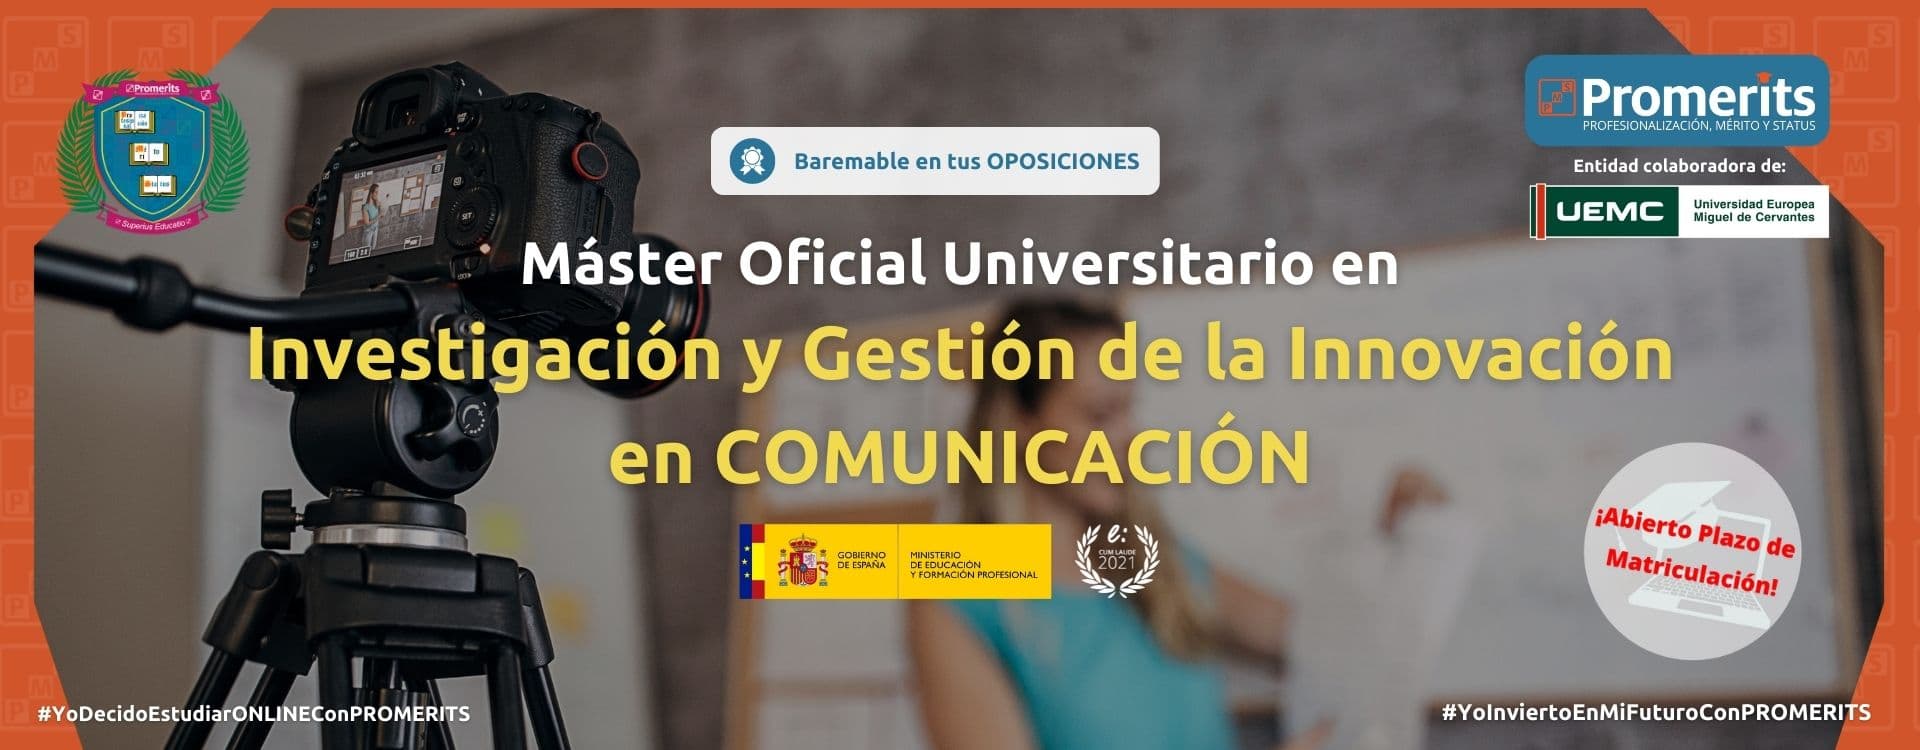 Máster Oficial Universitario en Comunicación